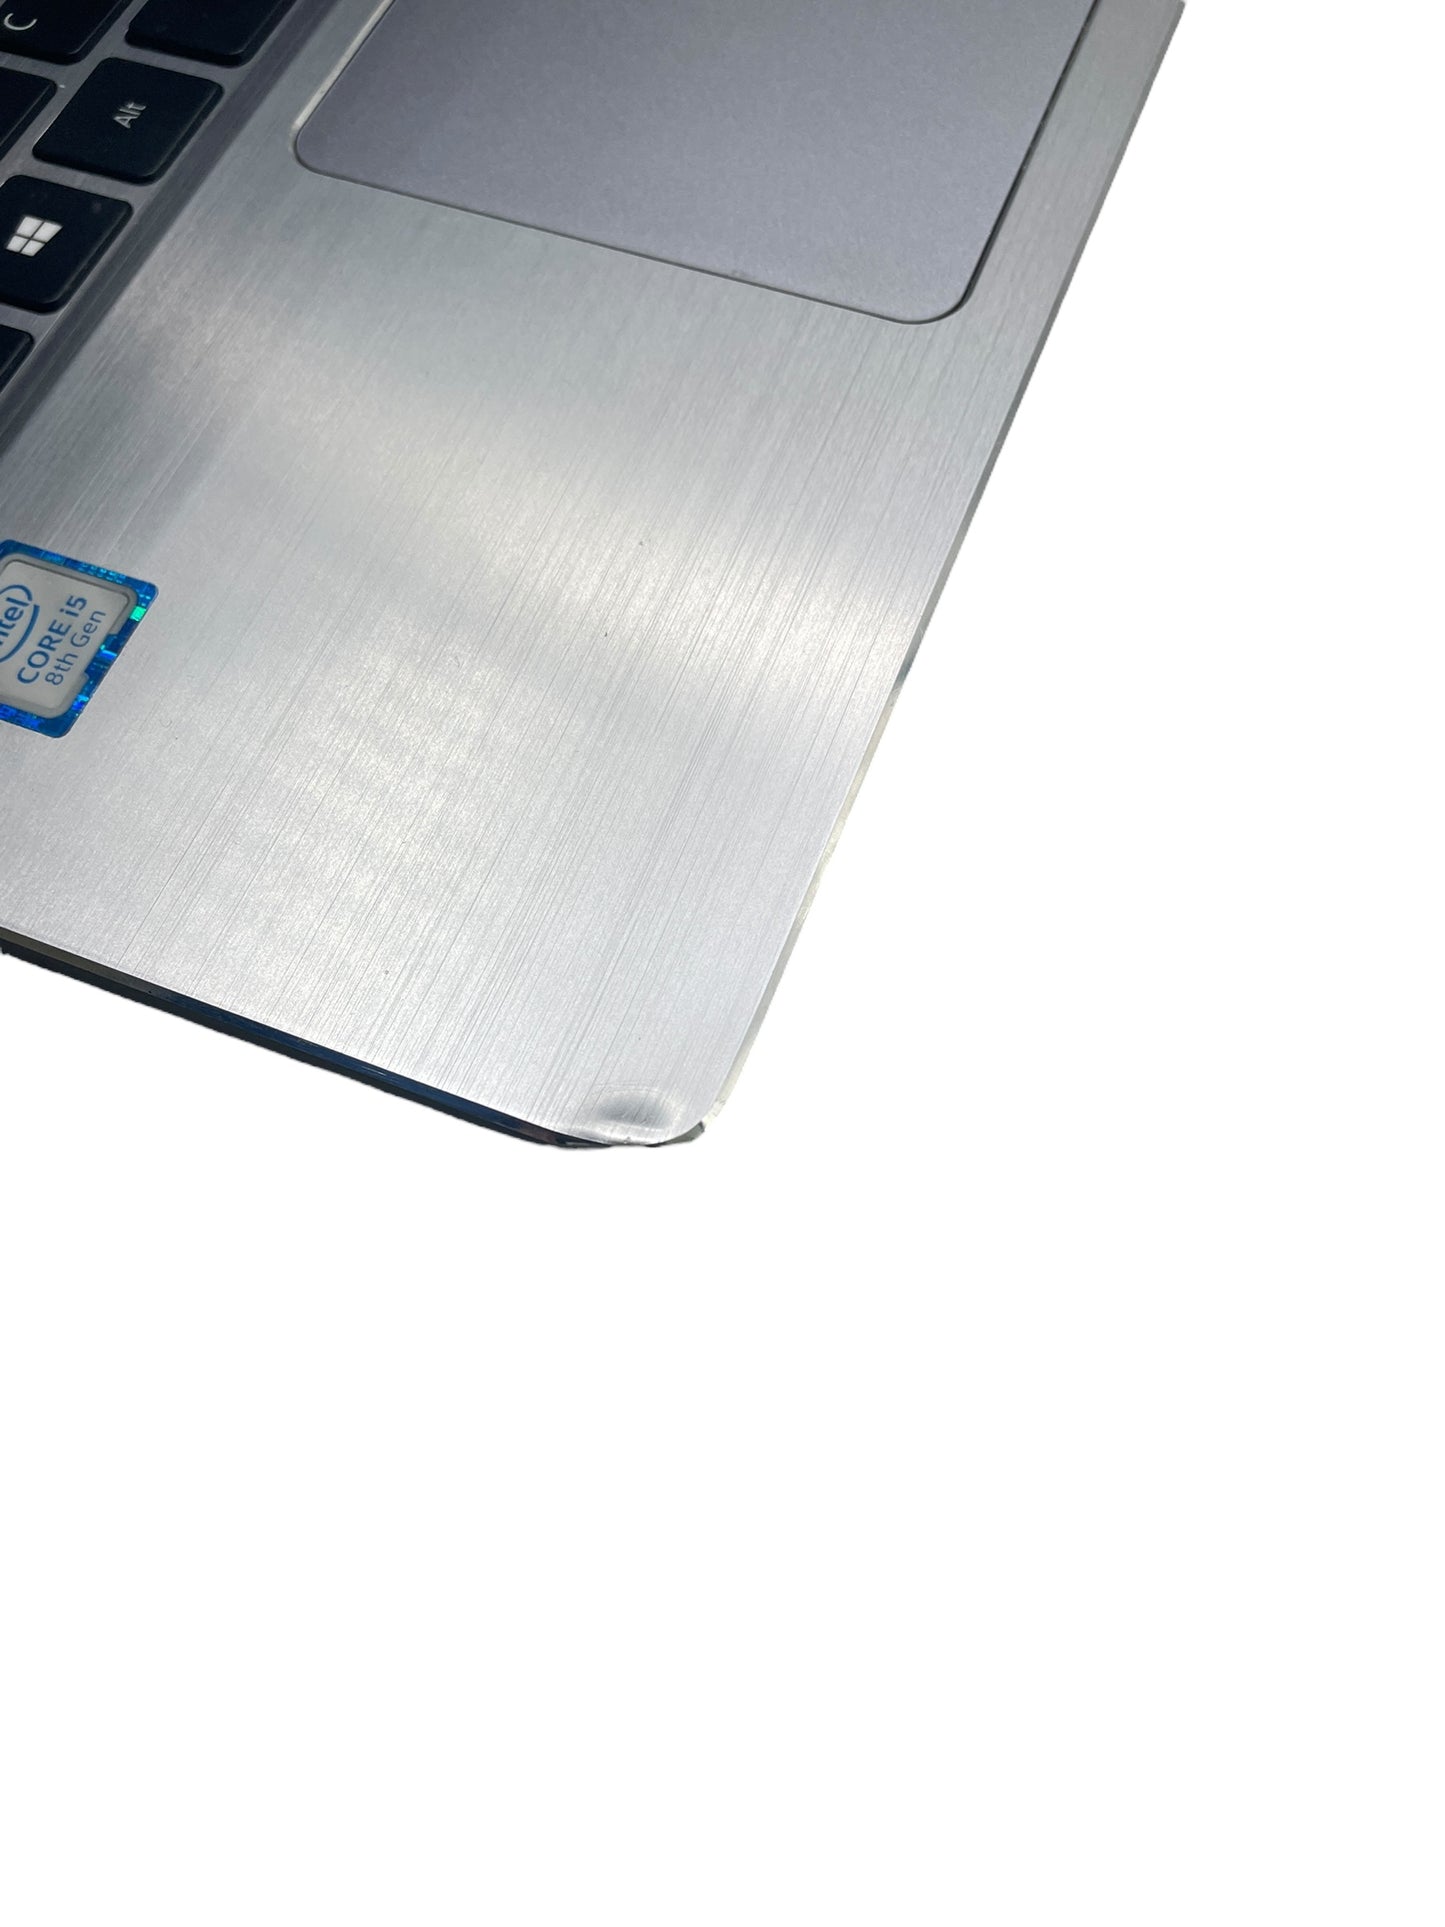 Acer Swift 3 Laptop 14" SF314-54 (Intel Core i5-8250U @ 1.60GHz, 8GB RAM 1TB HDD)